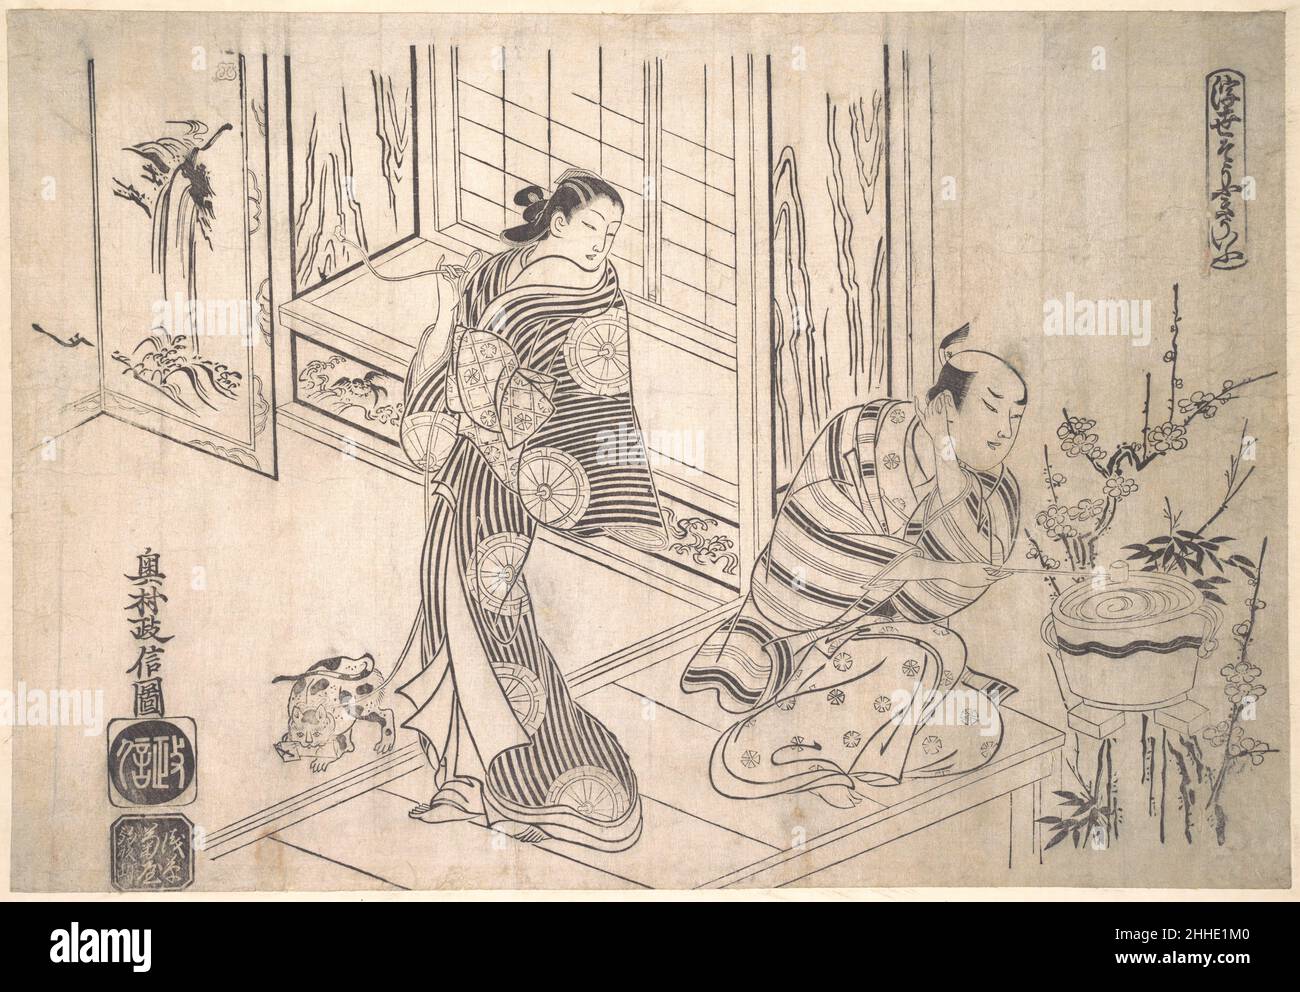 Parodia della leggenda di Xu You e Chao fu ca. 1715 Okumura Masanobu Giapponese in una versione molto divertente e complicata di questa leggenda, Xu appare come un imbarazzato, due tempi amante di Edo e Chao fu come la sua rimprovera amante. Sta lavando le orecchie in uno sforzo disperato per convincerla che non conosce assolutamente niente di una lettera dal suo rivale. La lettera scoperta dalla padrona è vista nella bocca del suo gatto. L'allusione classica è velata nella cascata dipinta che fa parte del decor interno. Parodia della leggenda di Xu You e Chao fu 56780 Foto Stock